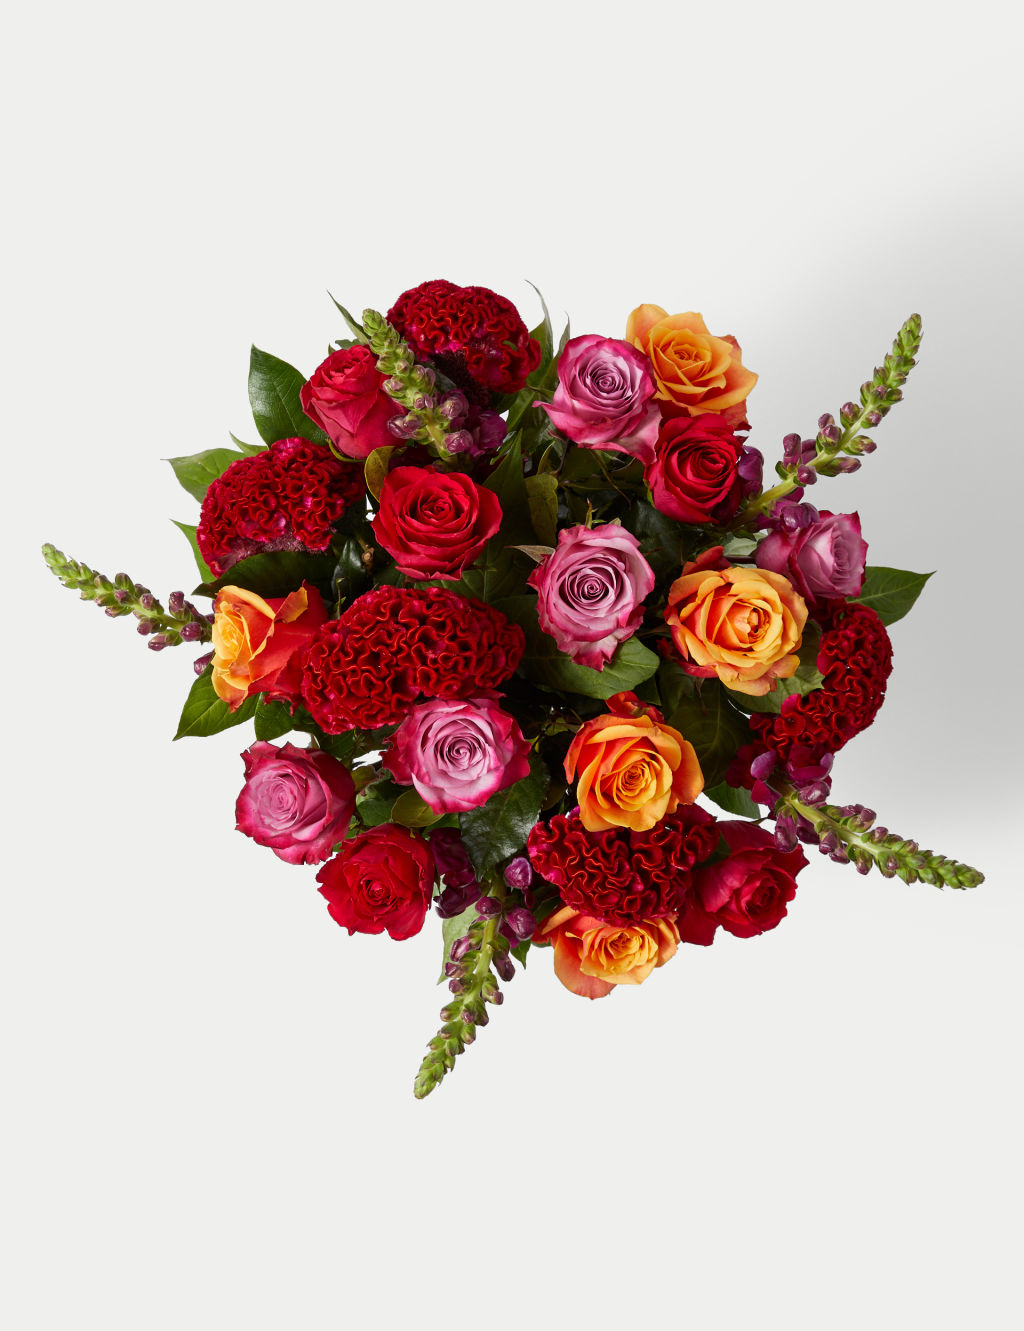 Rose & Antirrhinum Bouquet 1 of 5